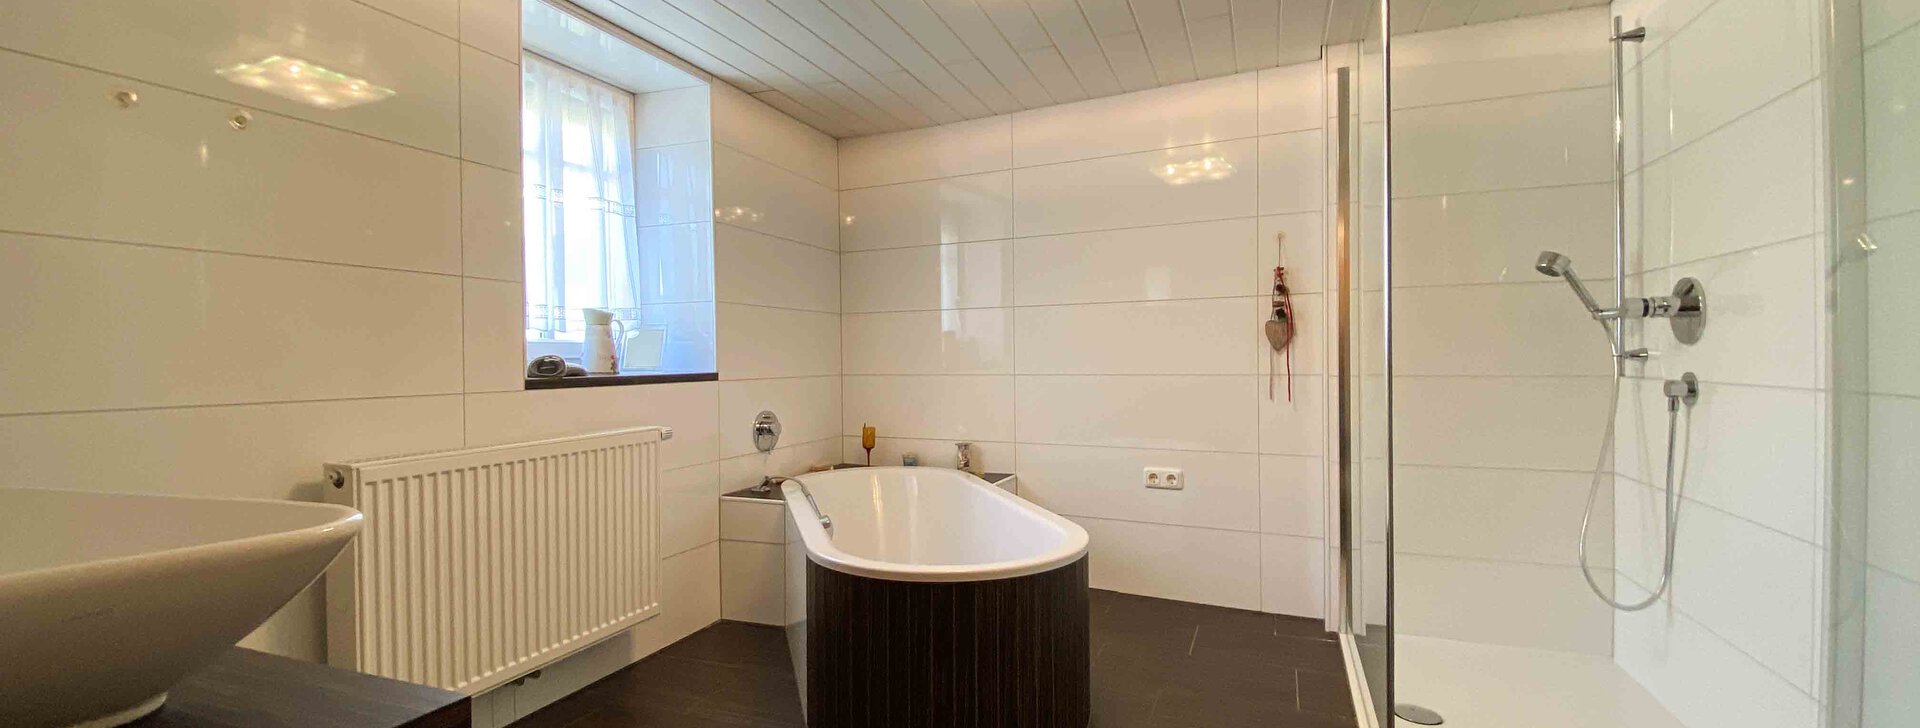 Badezimmer, Immobilie kaufen, Vierseithof in Schalchen | © HausBauHaus GmbH 